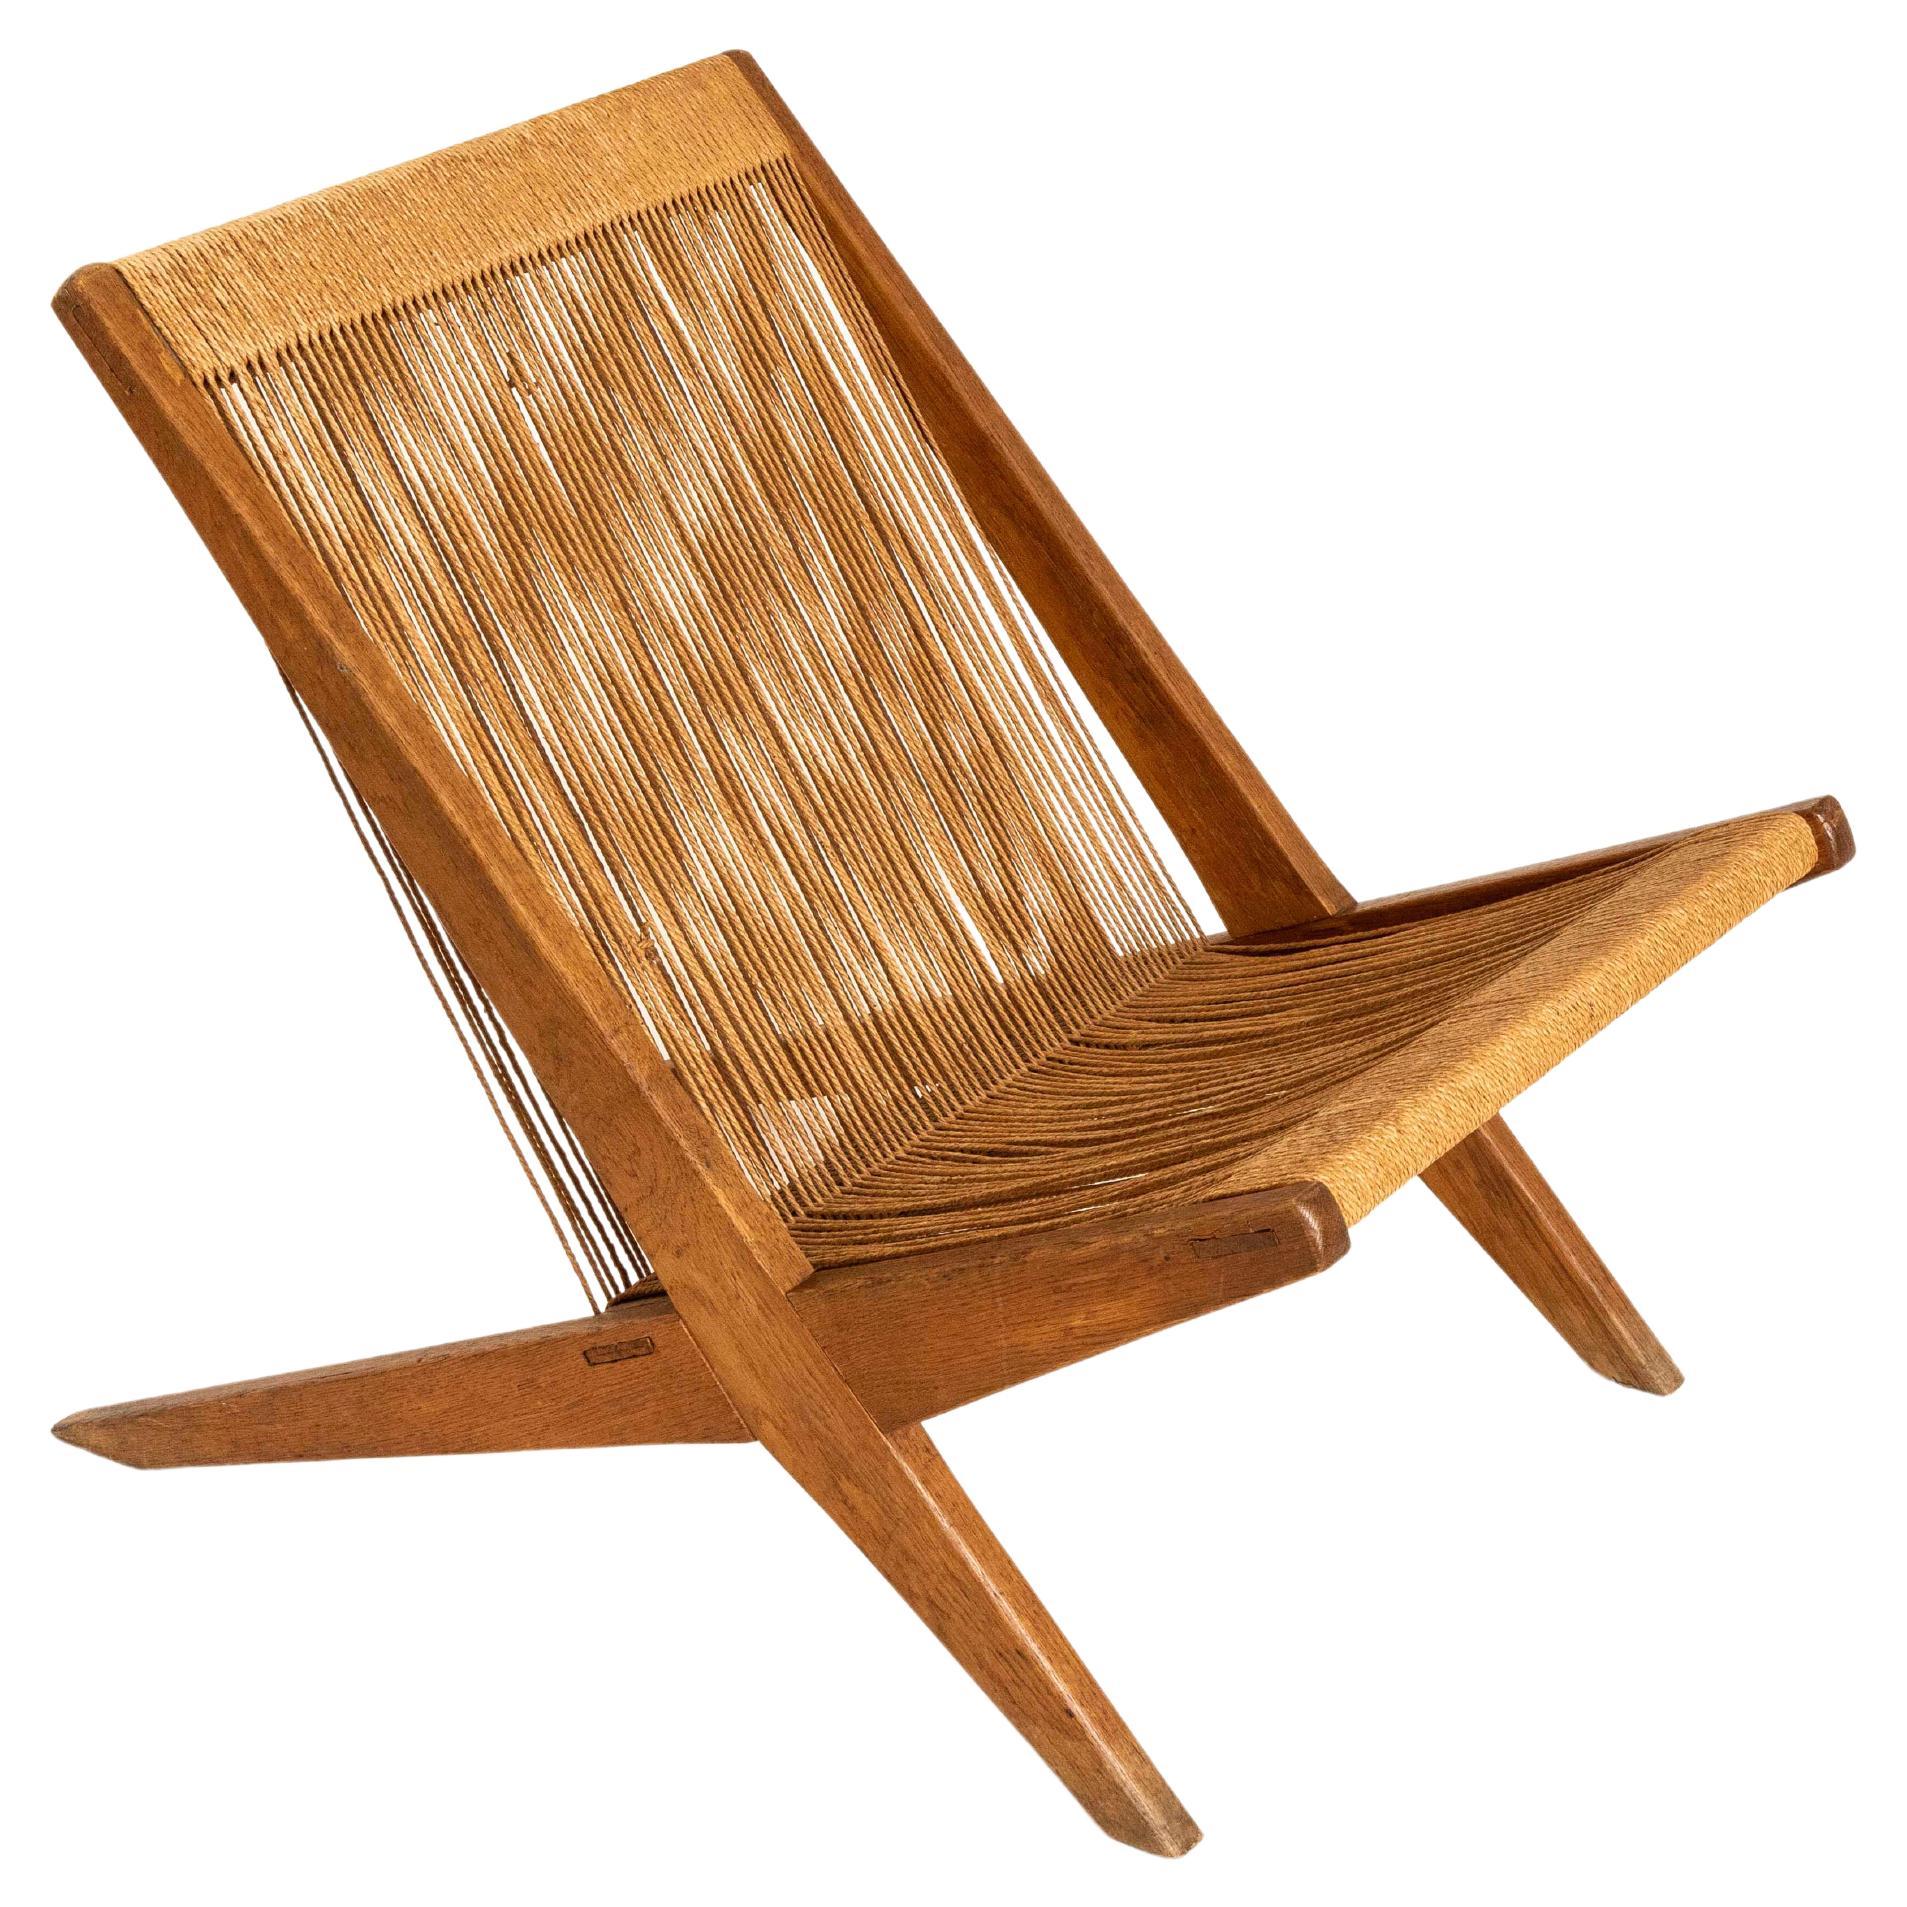 'Rope Chair' Attributed to Poul Kjaerholm and Jørgen Høj, Denmark, 1960s